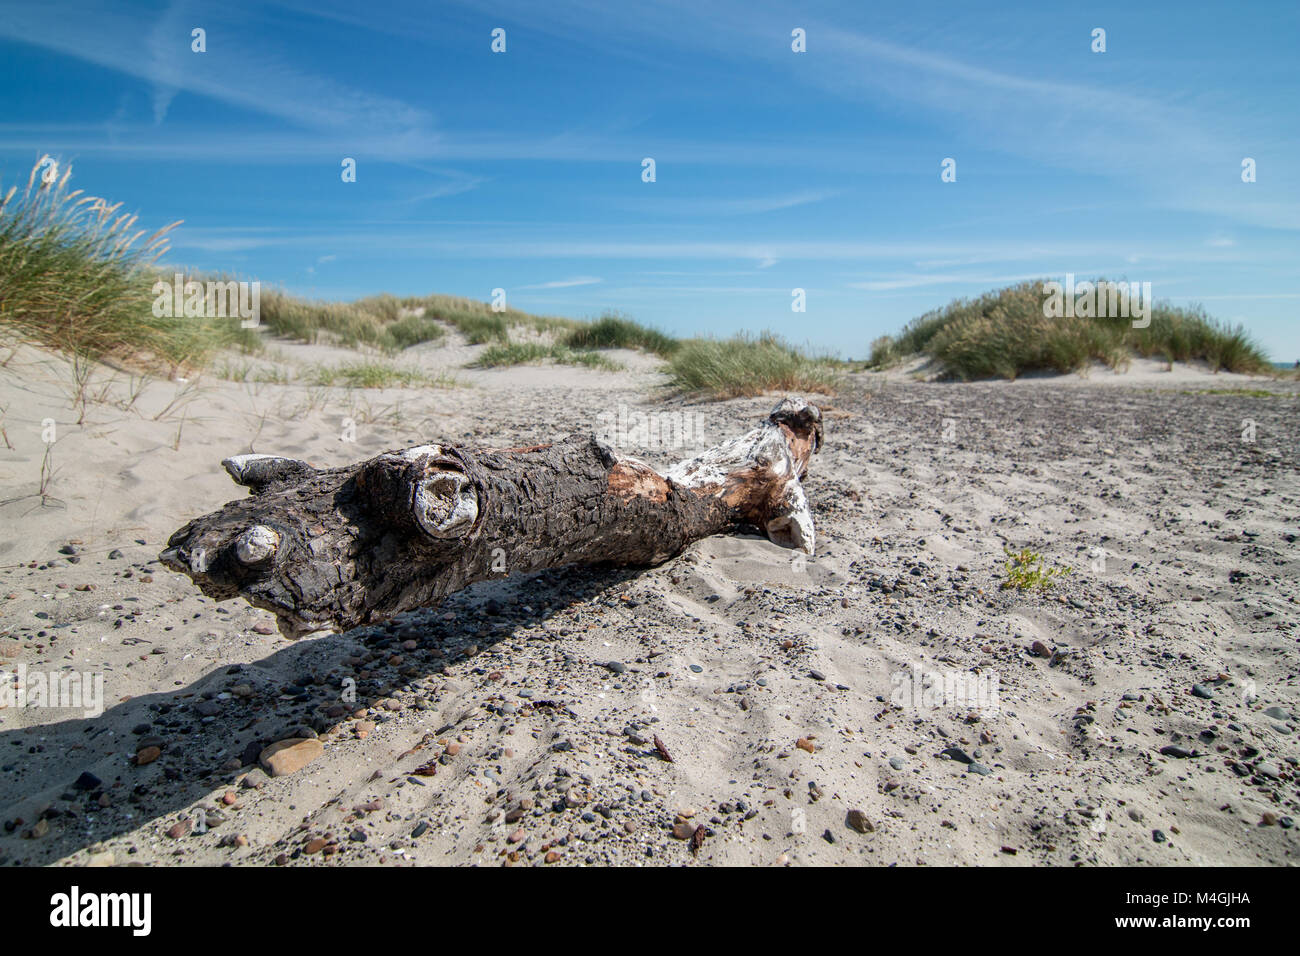 Spiaggia di Grenen nel nord della Danimarca nella luce del sole, con un legno morto sulla spiaggia sabbiosa del sito con erba e dune shaddows. 2017 Foto Stock